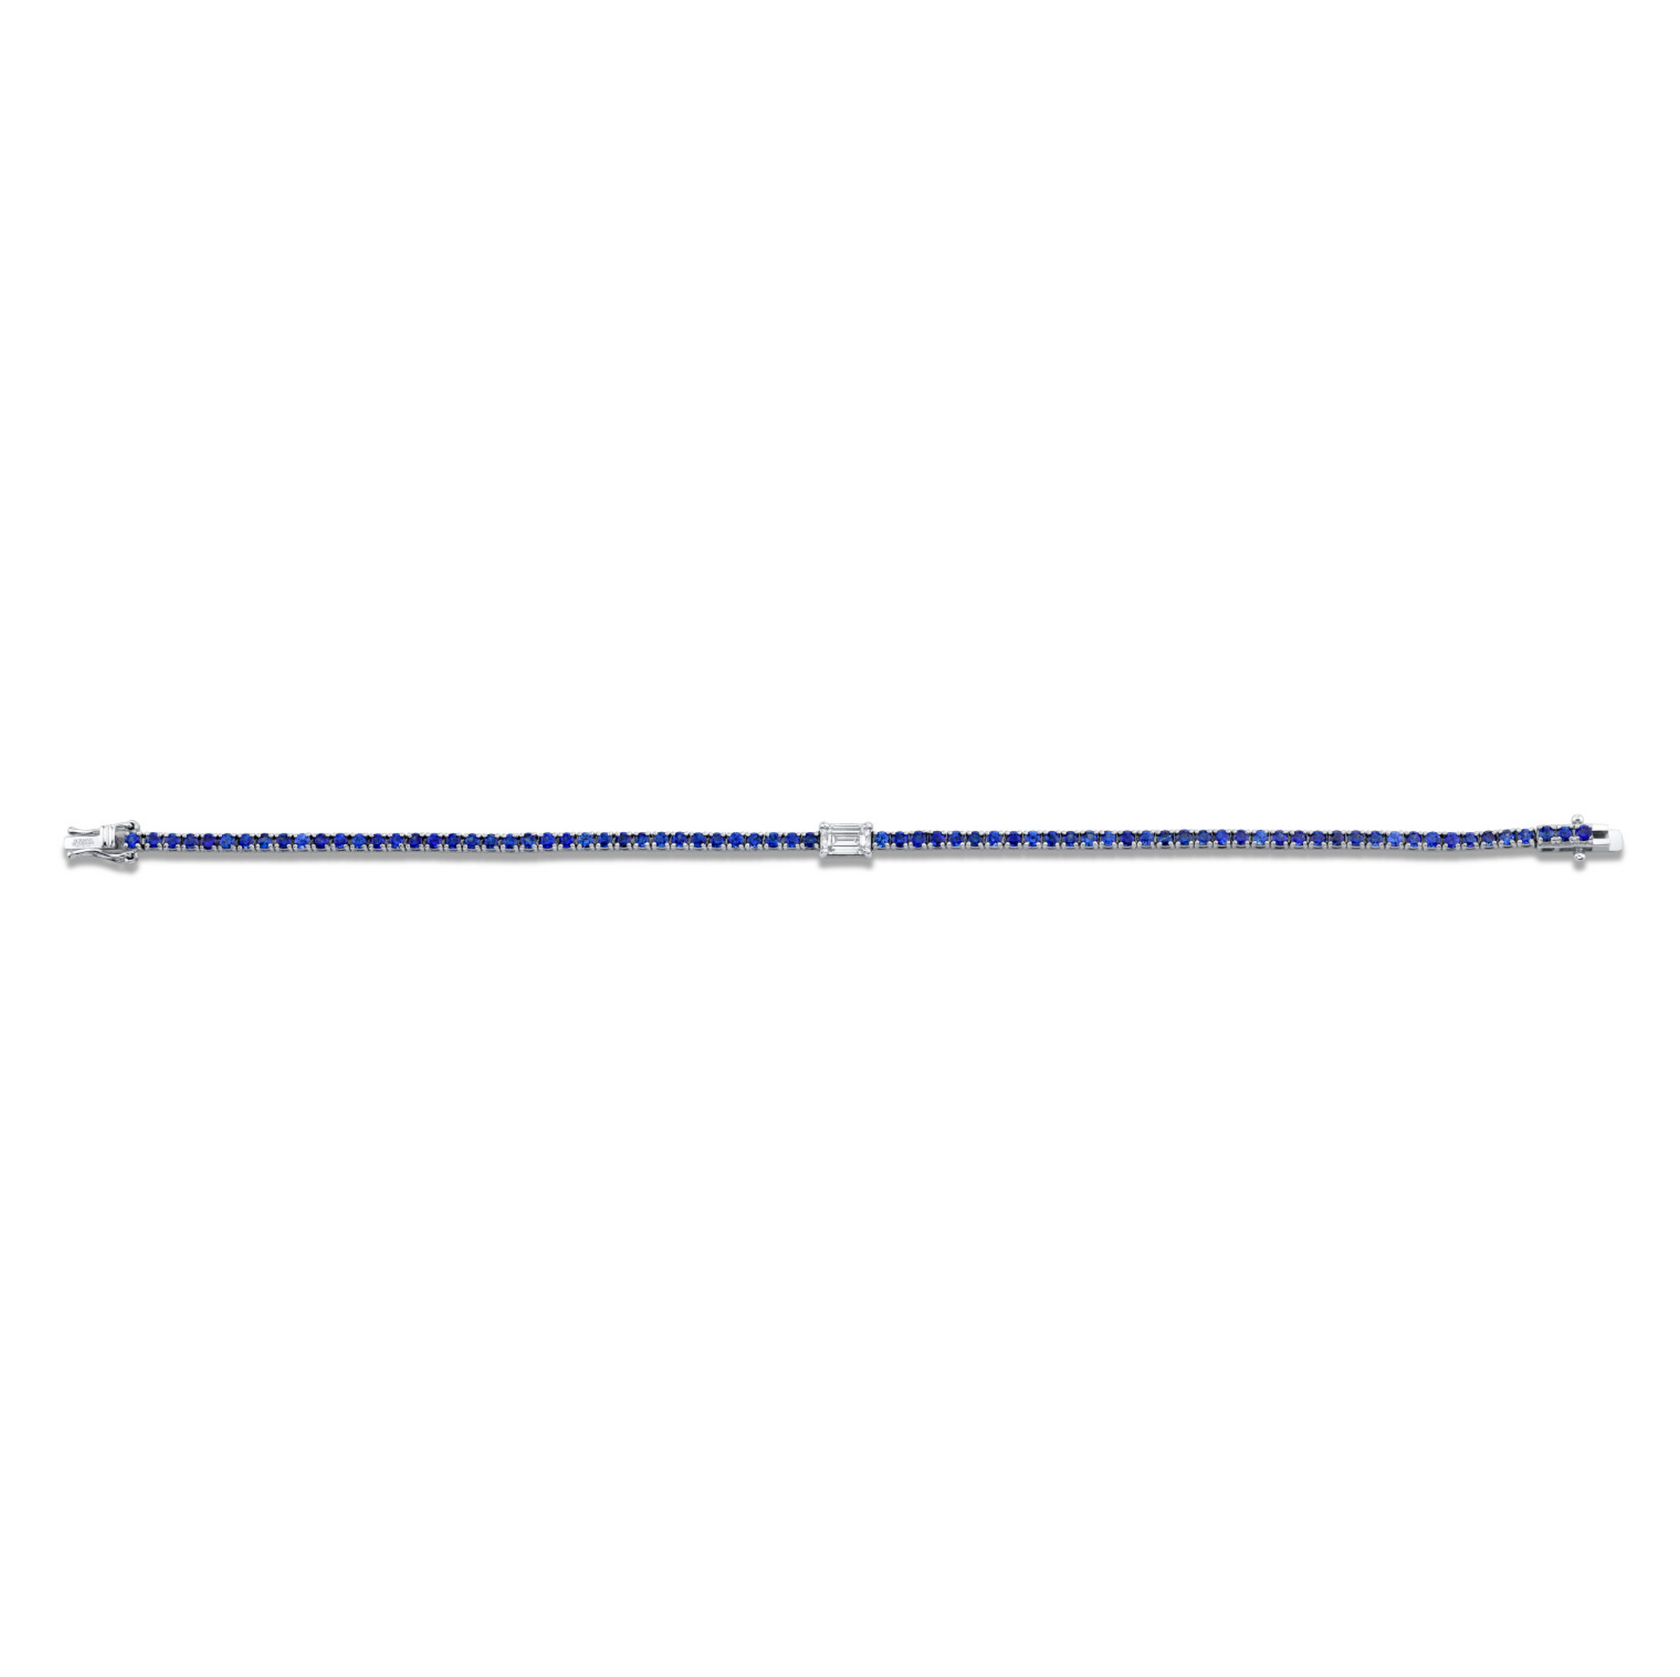 Blue Sapphire Line Bracelet